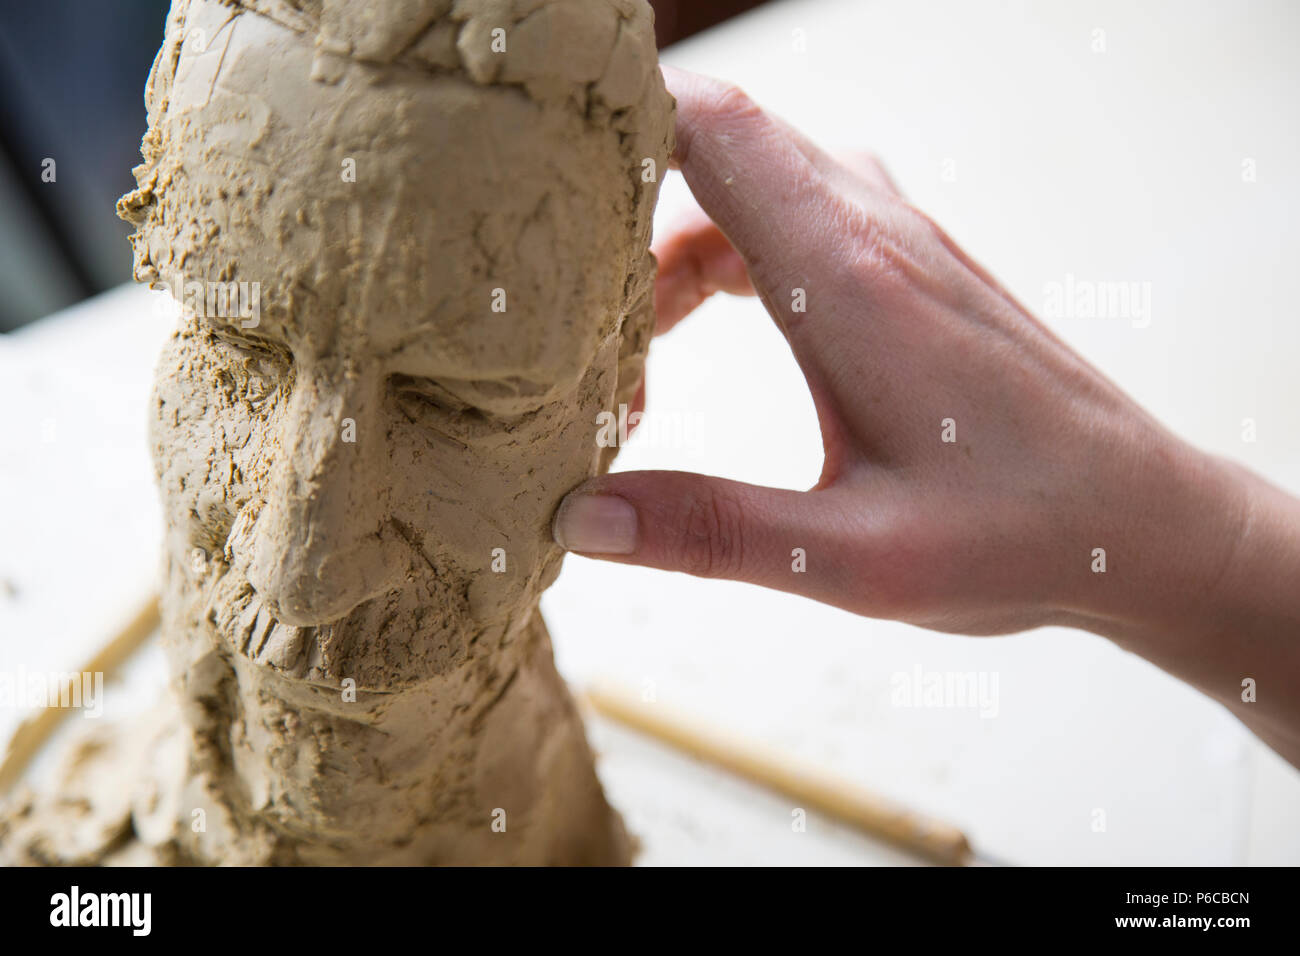 Artista scultore creando un busto scultura con argilla. È felice della sua opera, lei è concentrata, ella è scolpire una donna. Foto Stock